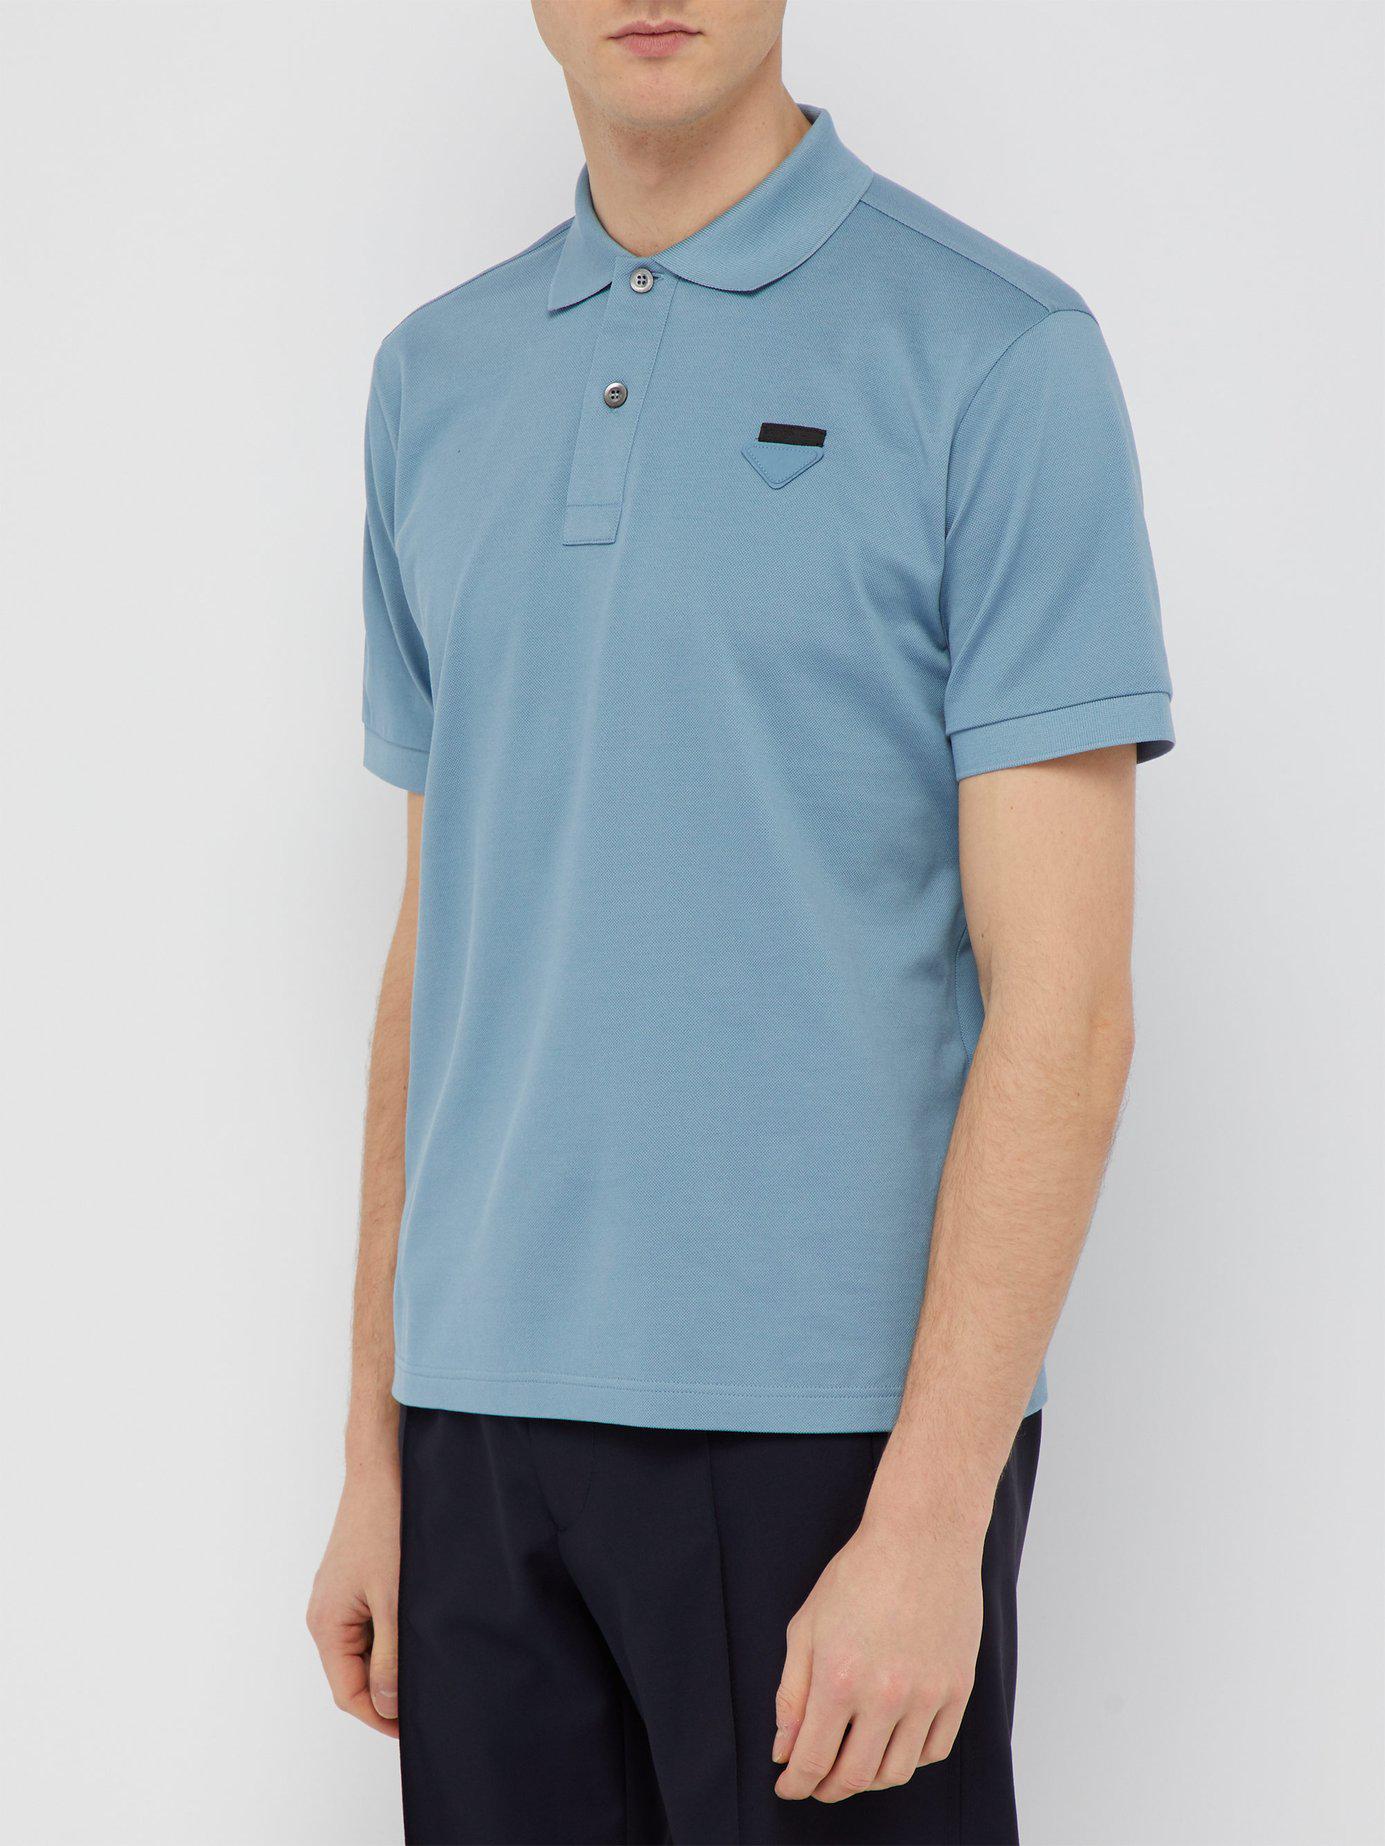 Prada Conceptual Triangle Logo Cotton Piqué Polo Shirt in Light Blue (Blue)  for Men - Lyst